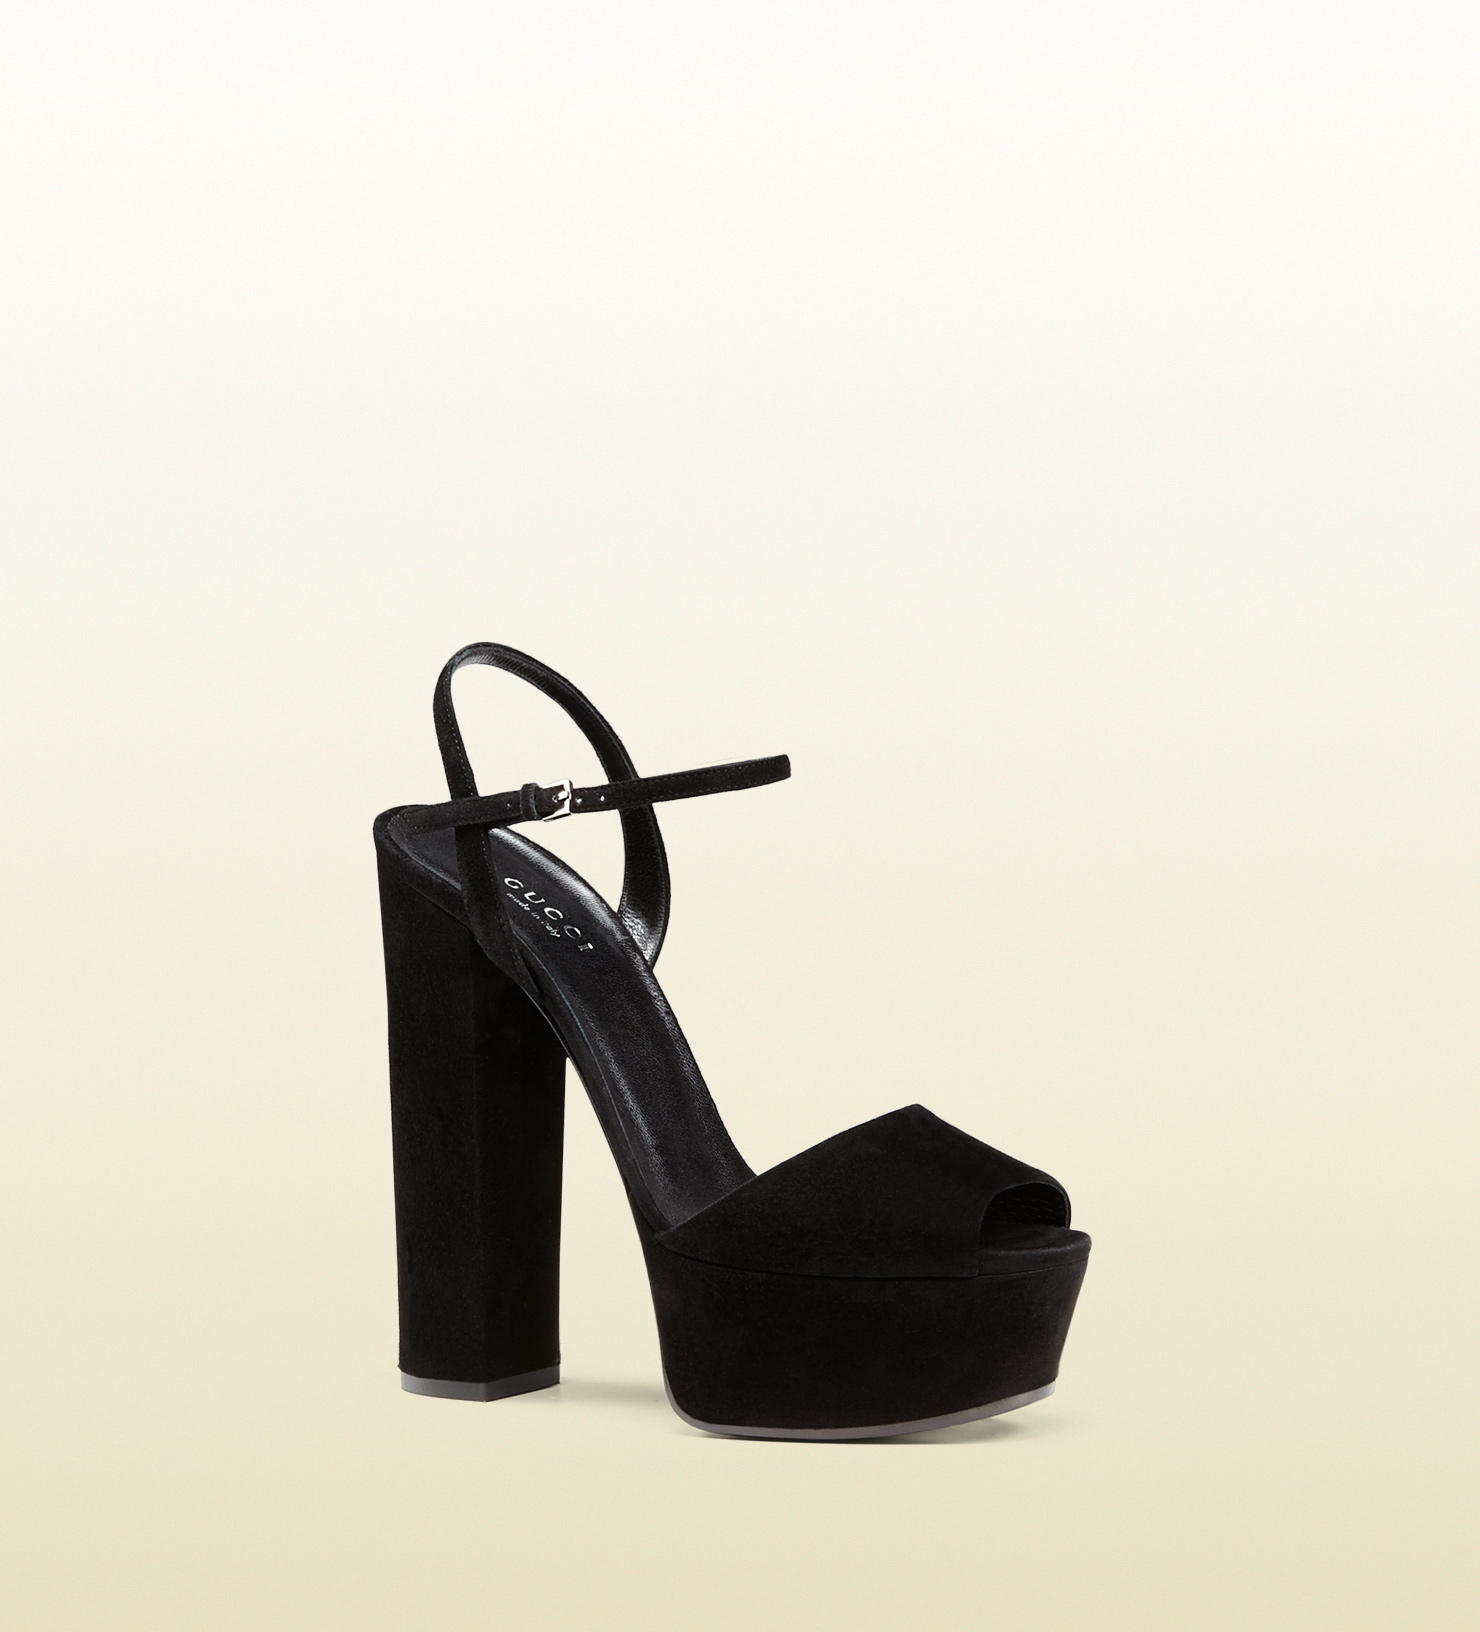 Gucci Suede Platform Sandal in Black - Lyst